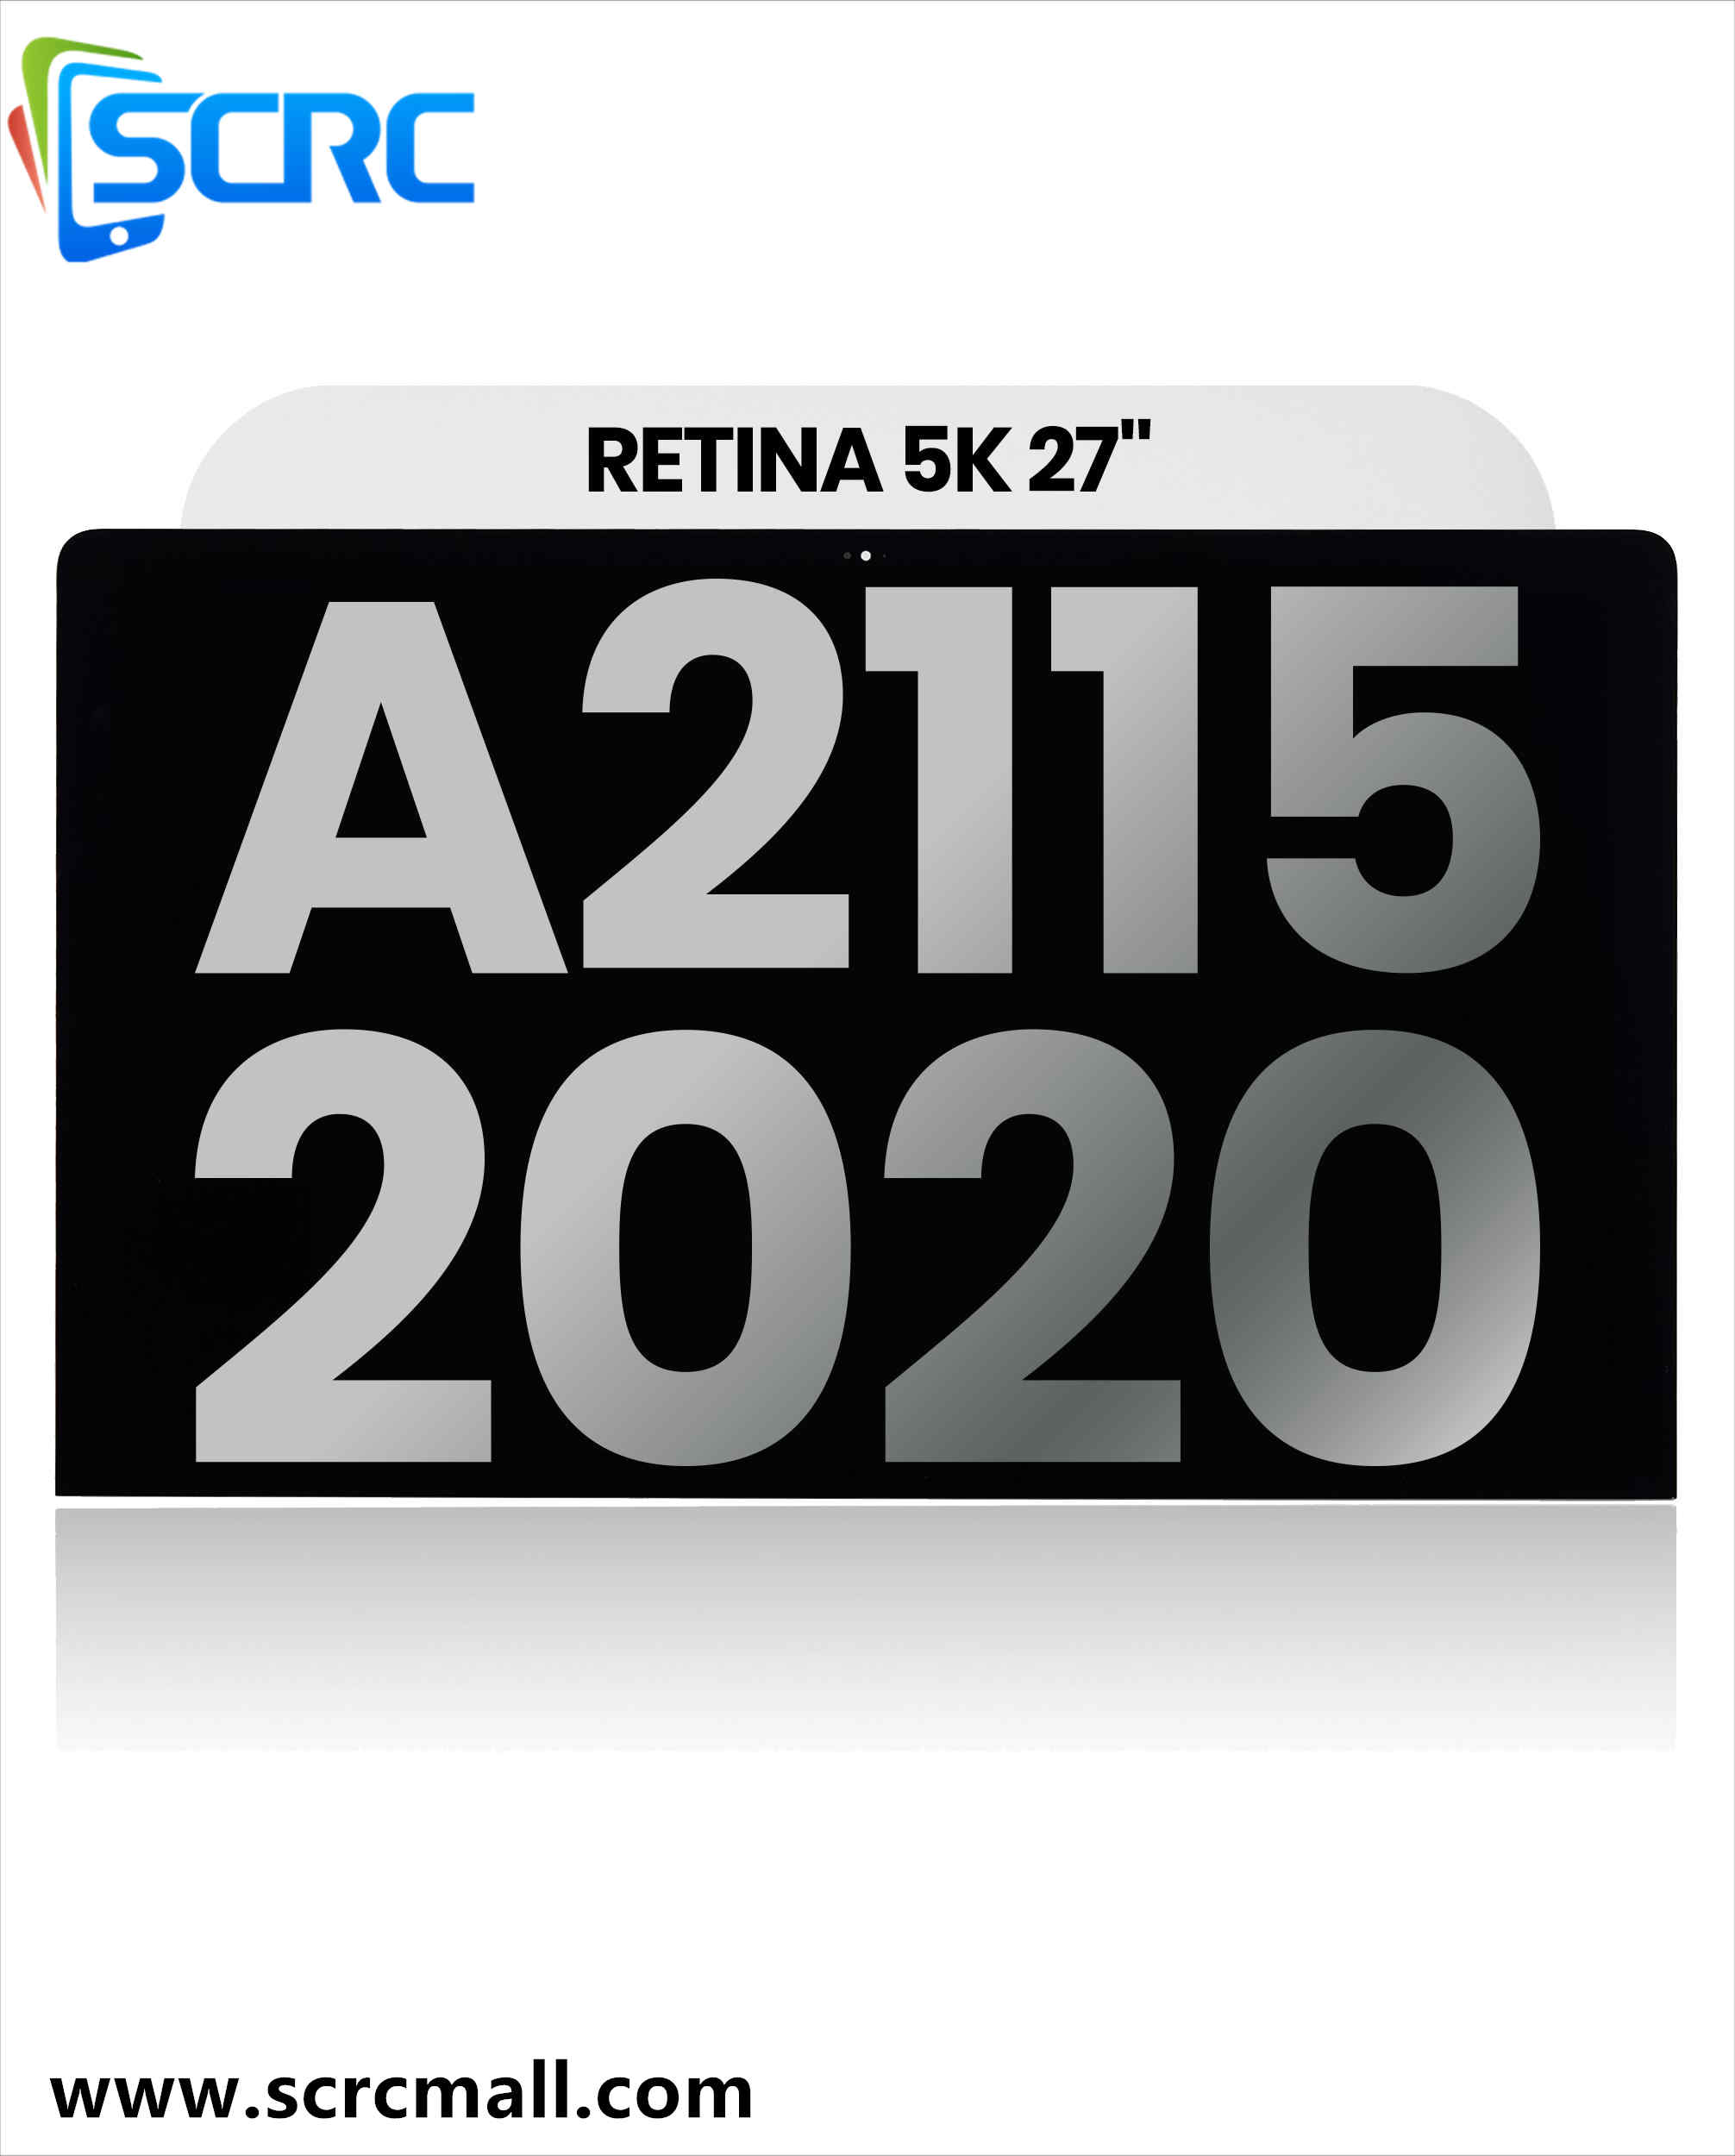 مجموعة شاشة LCD لجهاز iMac مقاس 27 بوصة Retina 5K (A2115 ، منتصف 2020) - 0 